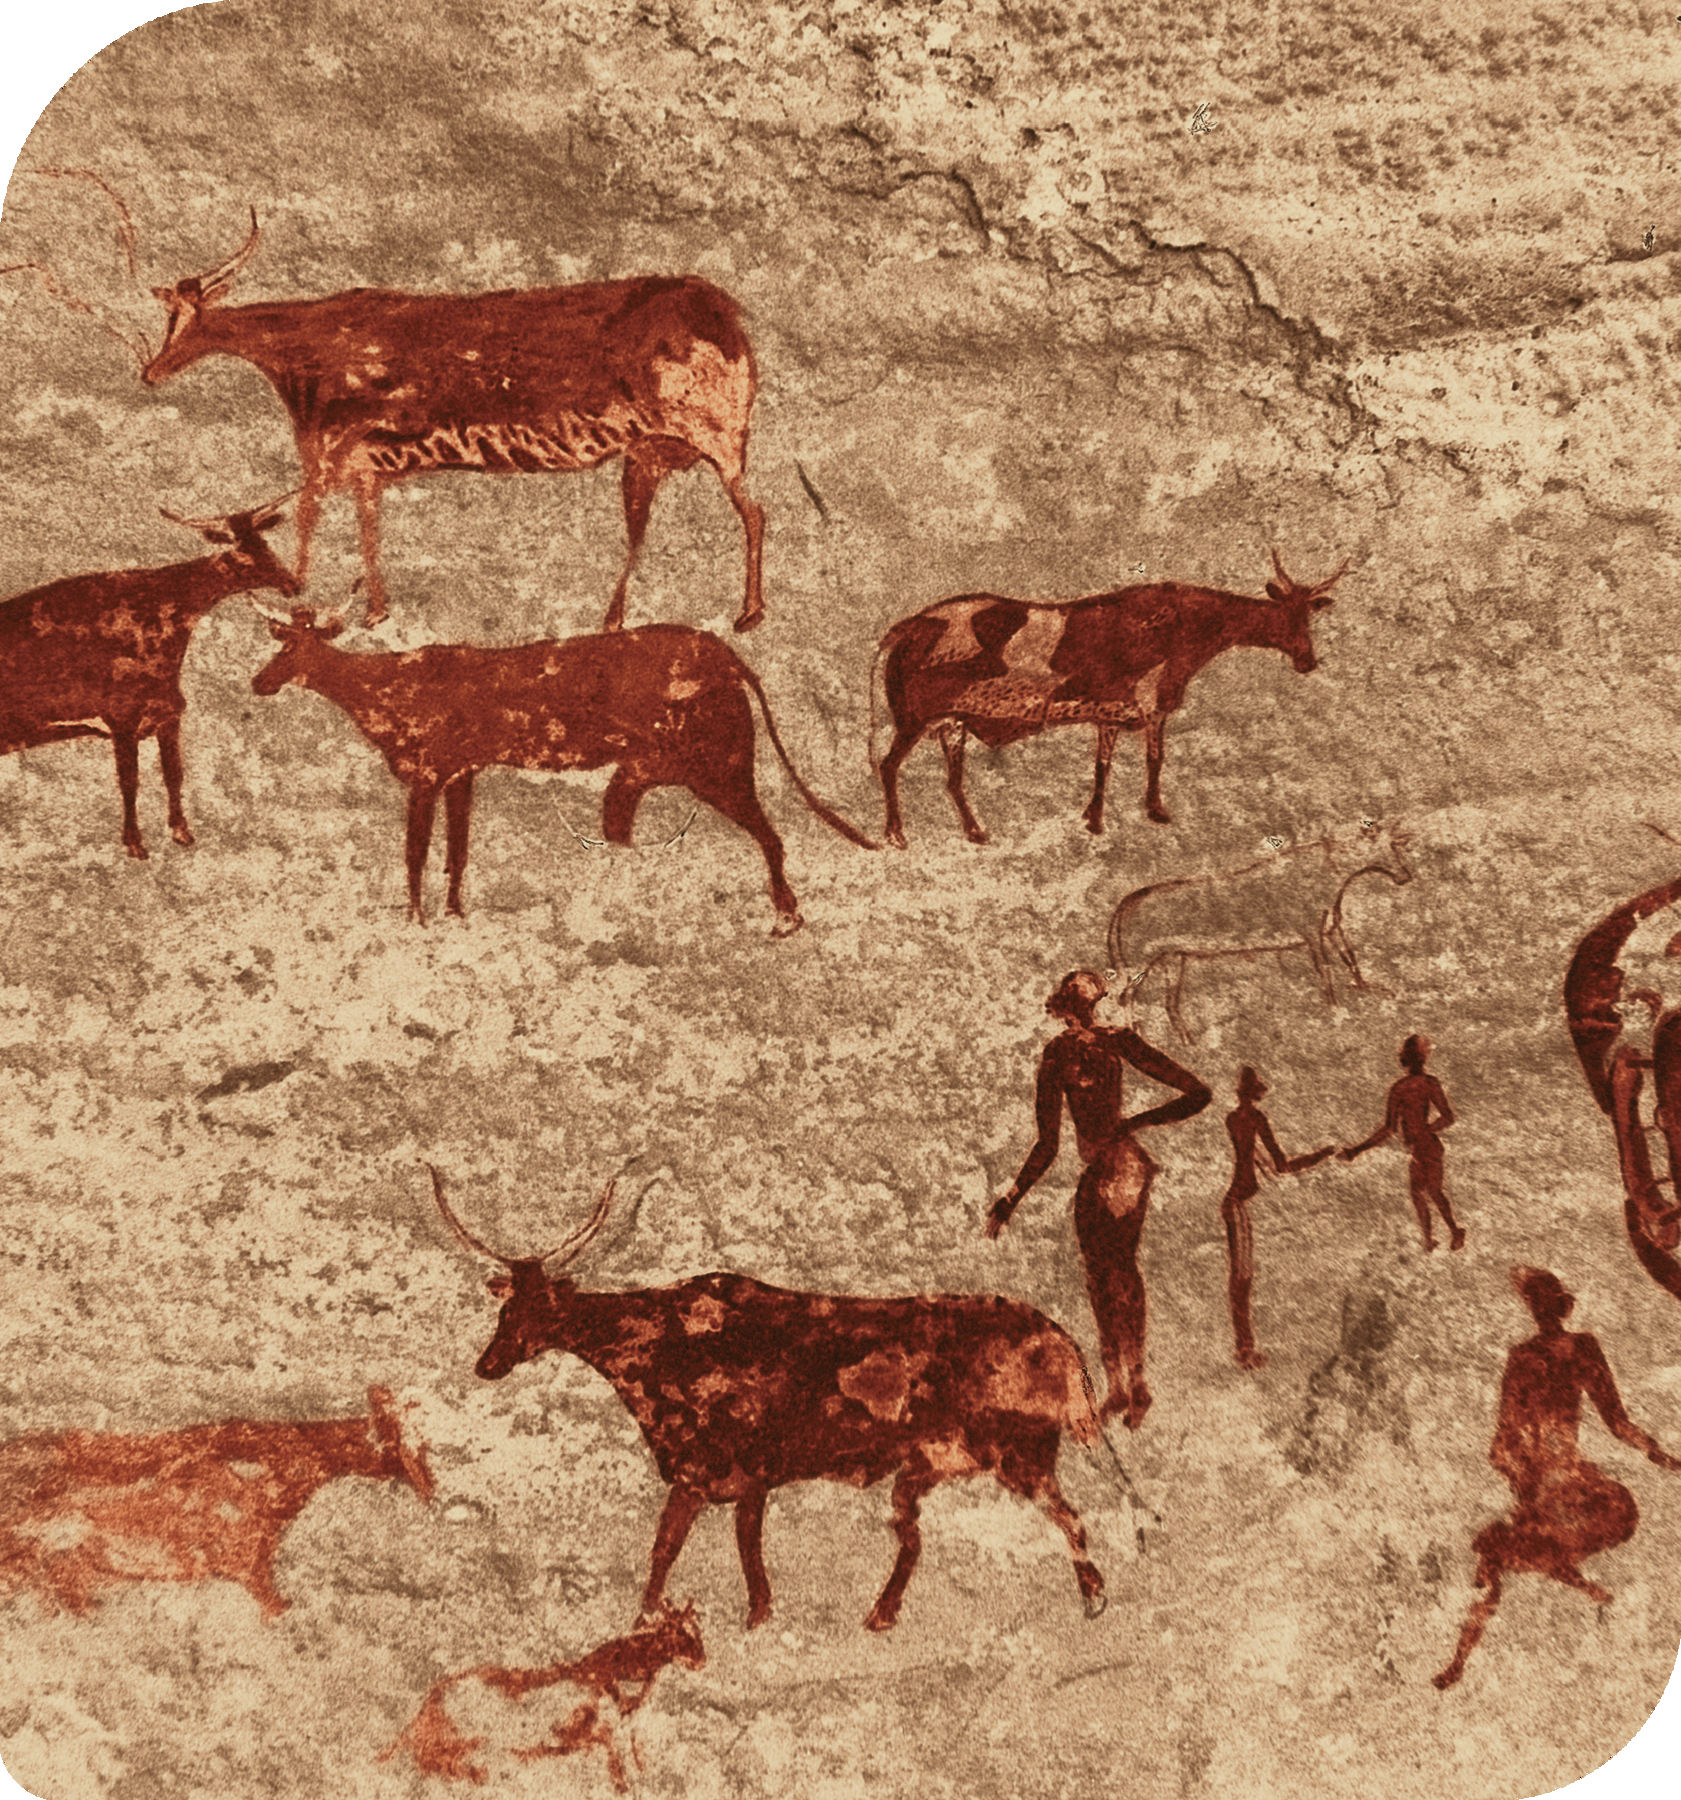 Pintura rupestre.  Silhueta de animais quadrúpedes com chifres. À direita, silhueta de pessoas de pé próximas aos animais.